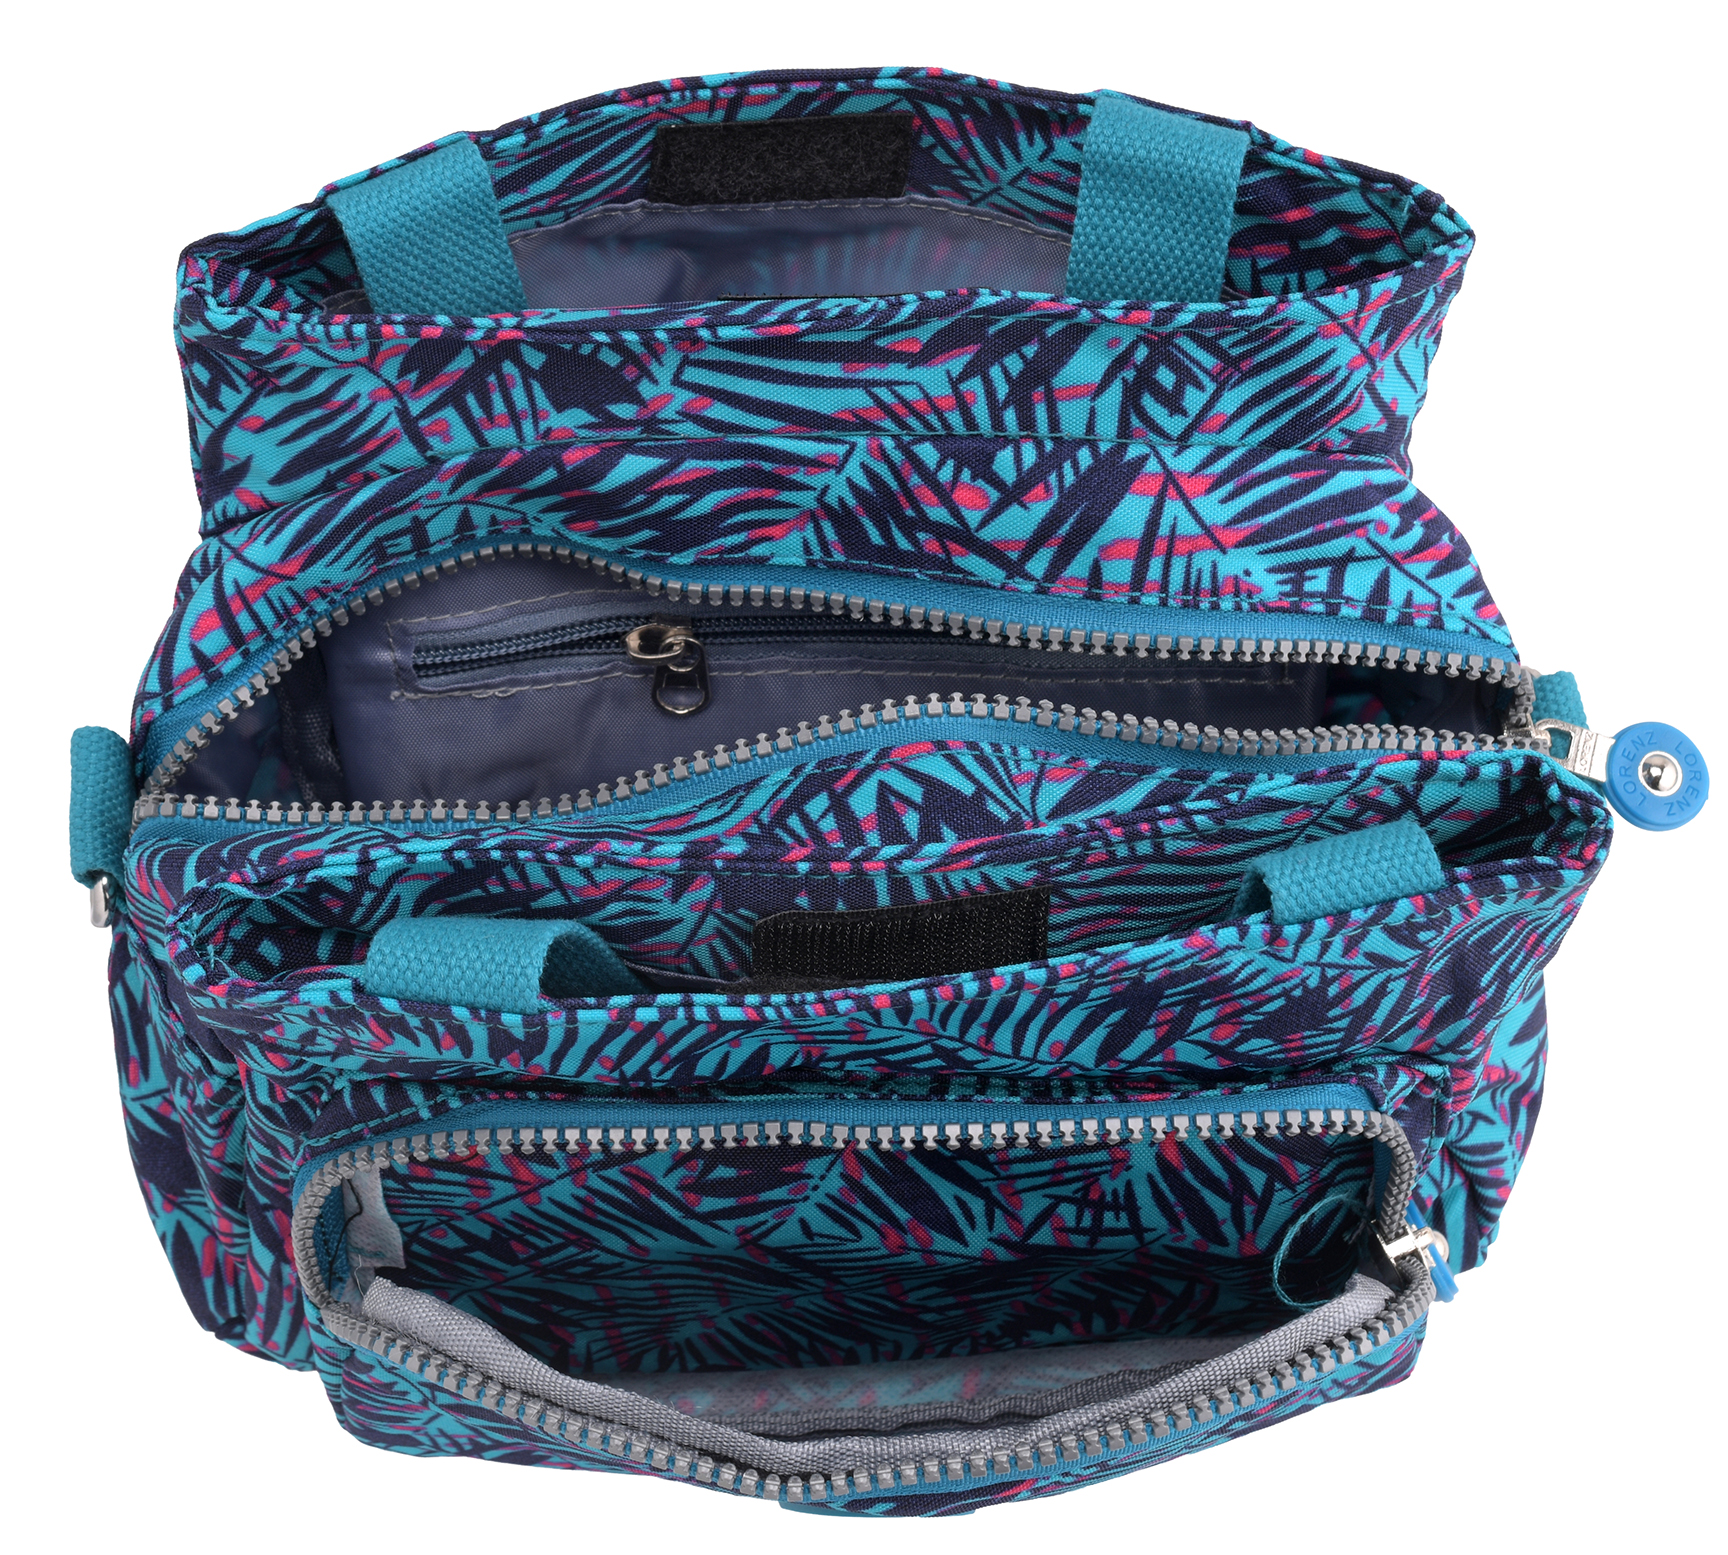 Ladies Assorted Pattern Lightweight Handbag Detachable Shoulder Strap Fairfax | eBay